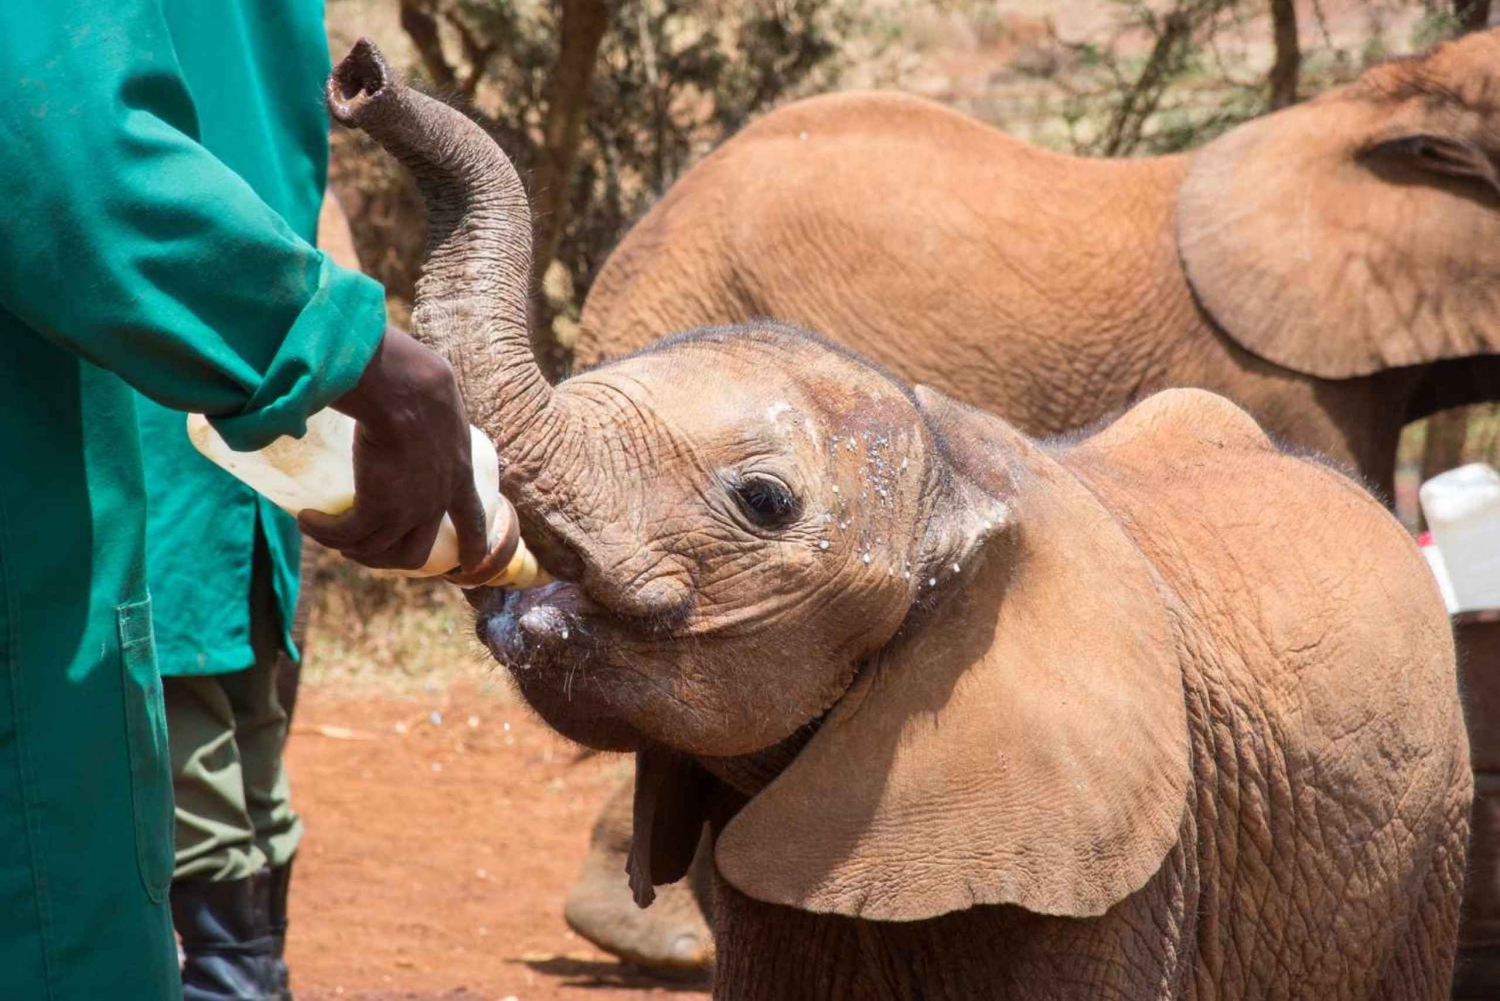 Nairobi: Rundtur i nasjonalparken, elefantunger og giraffsenter